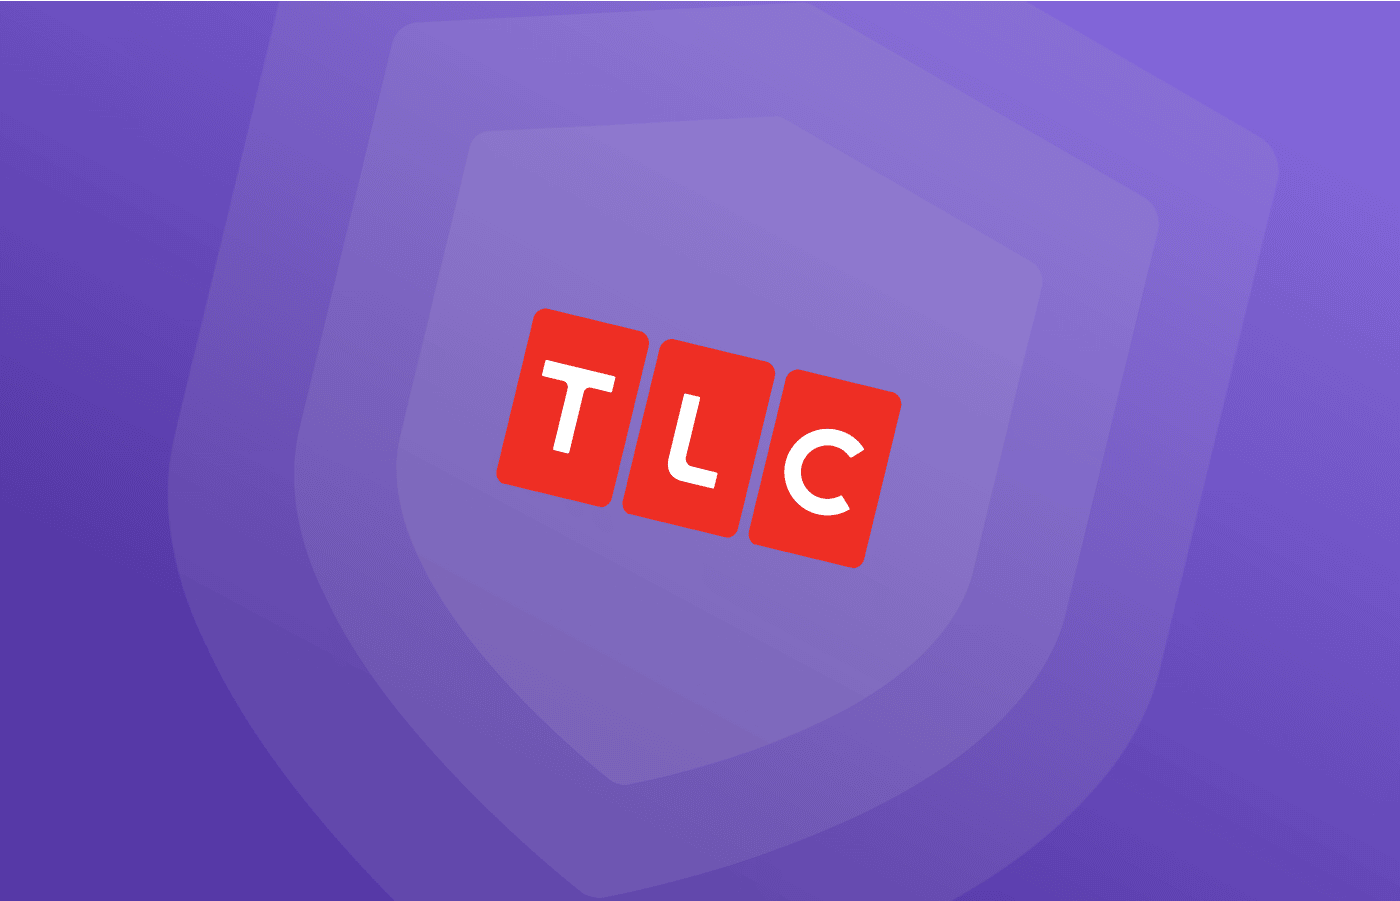 Best VPNs for TLC